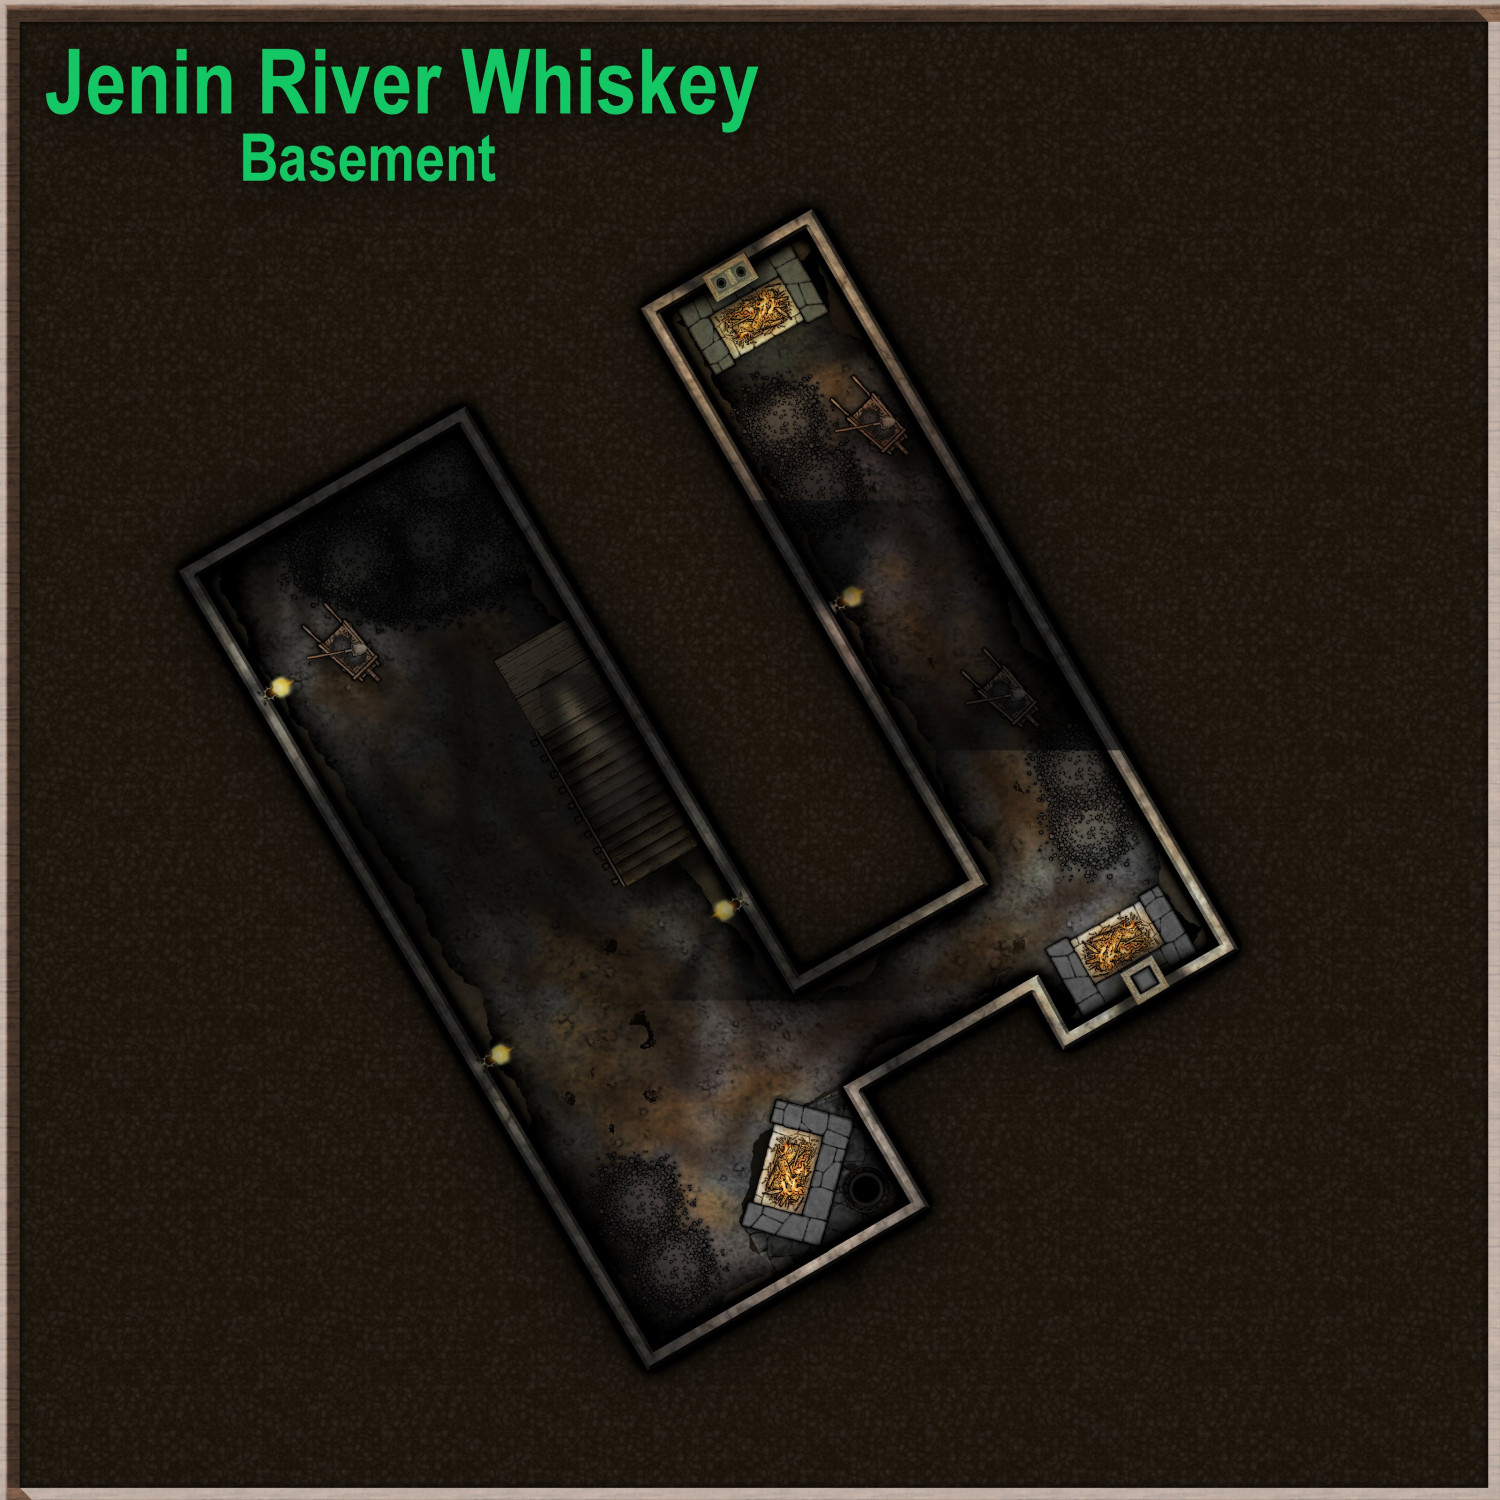 Jenin River Whiskey_Basement Lighting.JPG